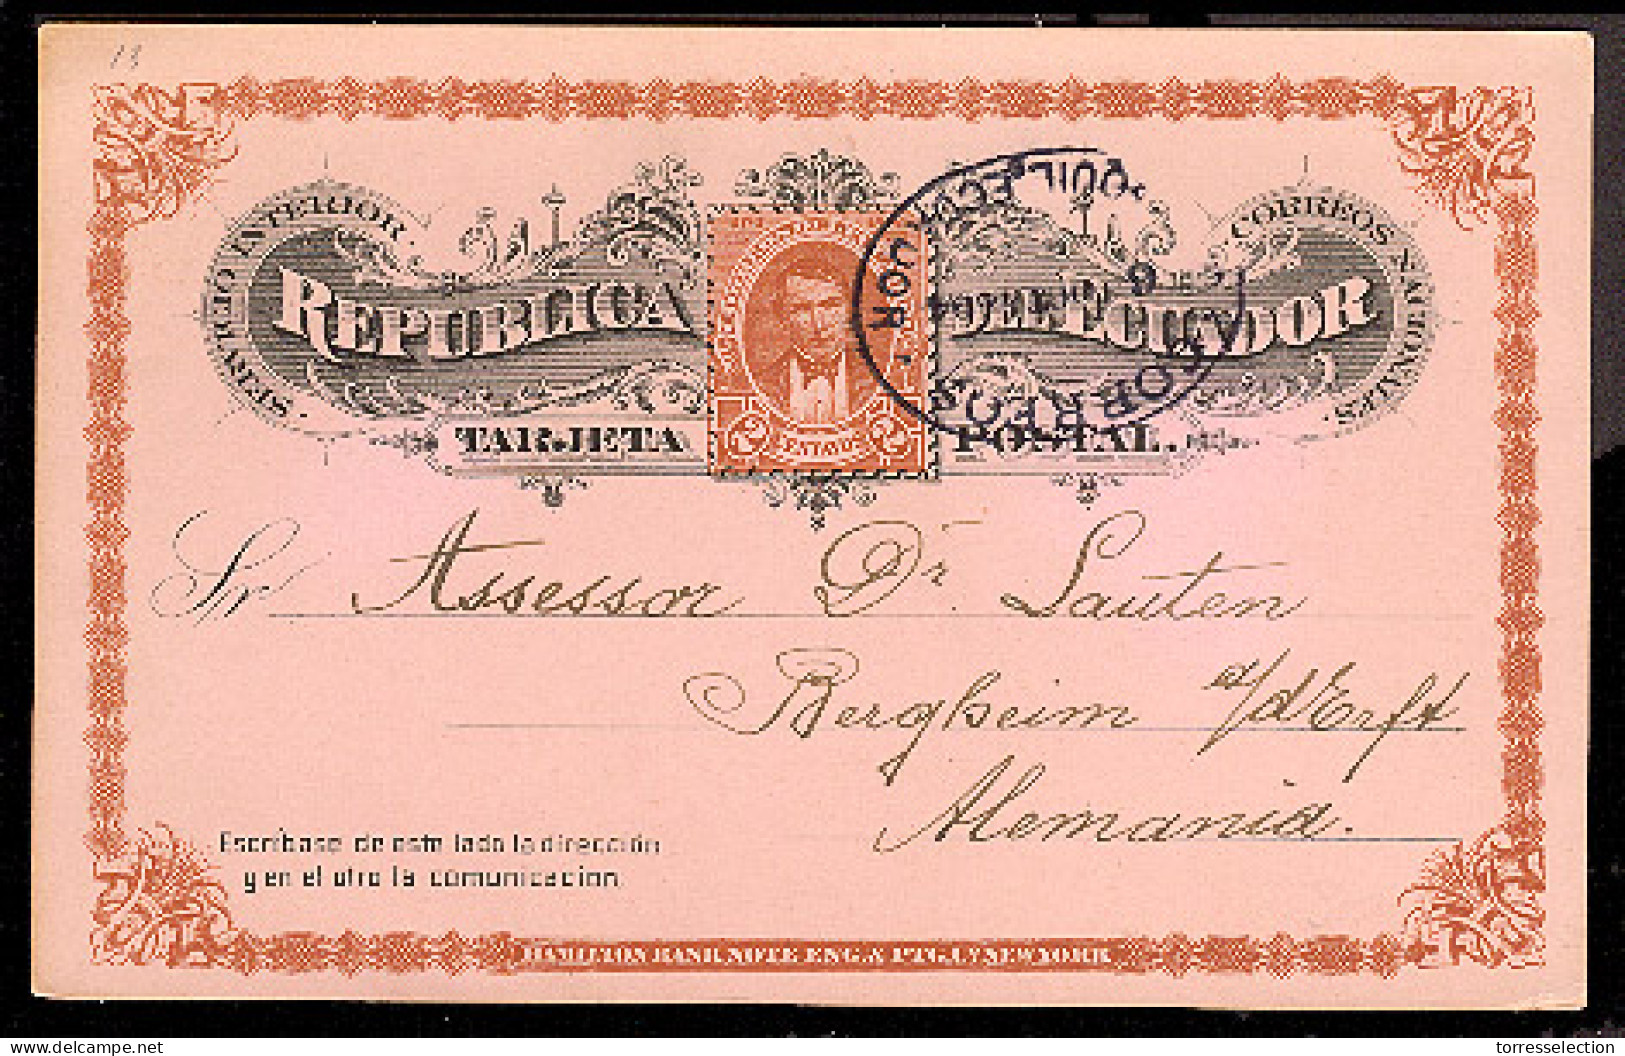 ECUADOR. 1894. Guayaquil - Germany. 2 Cts. Stat Card. Fine. - Ecuador